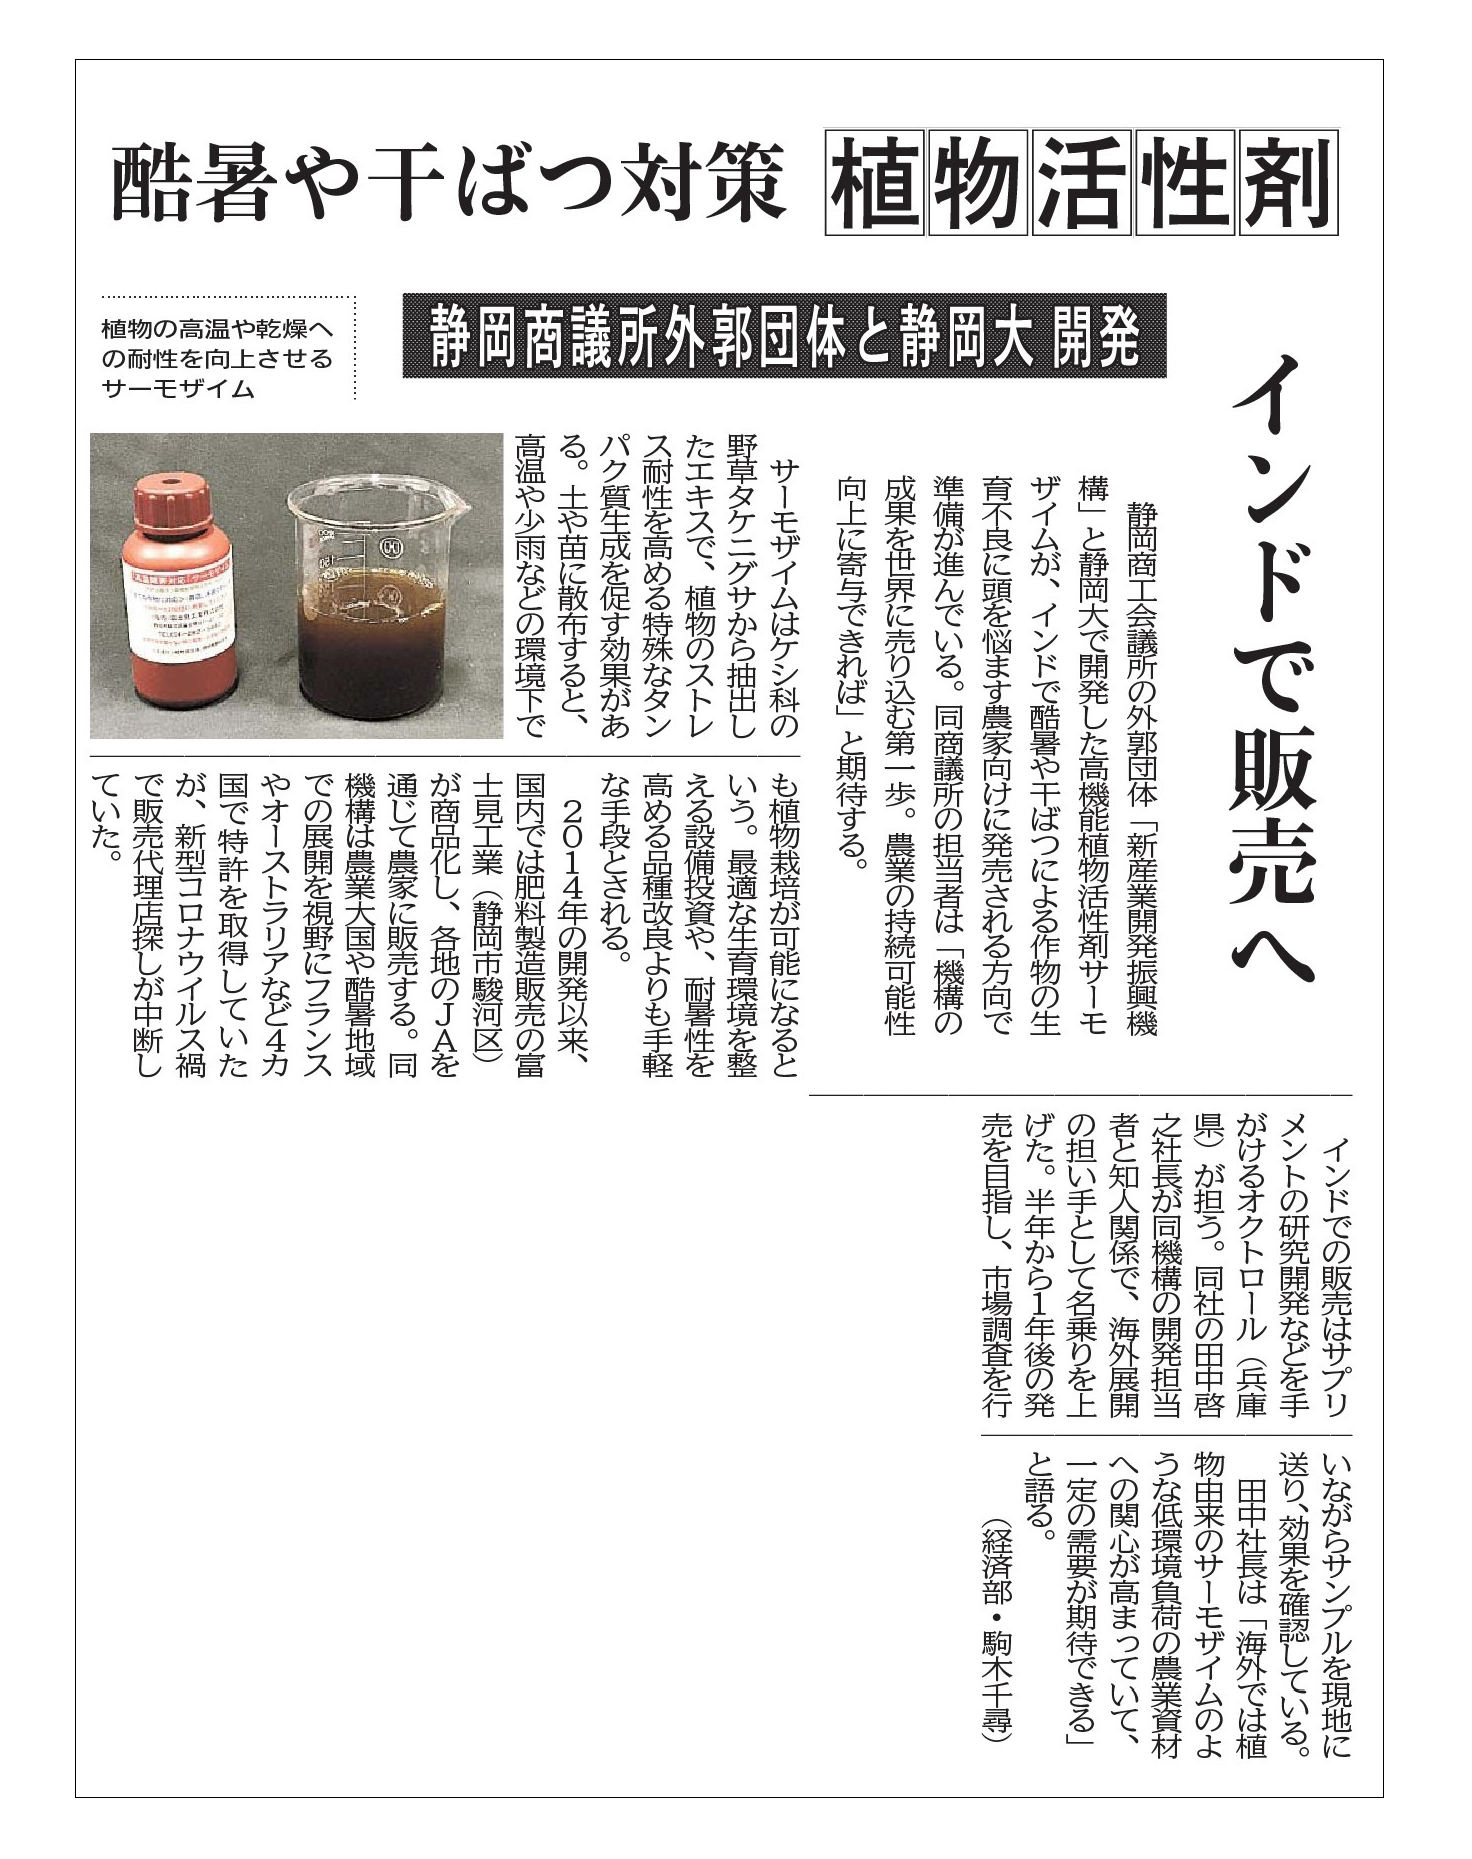 原先生が携わった研究開発の記事が静岡新聞に掲載されました